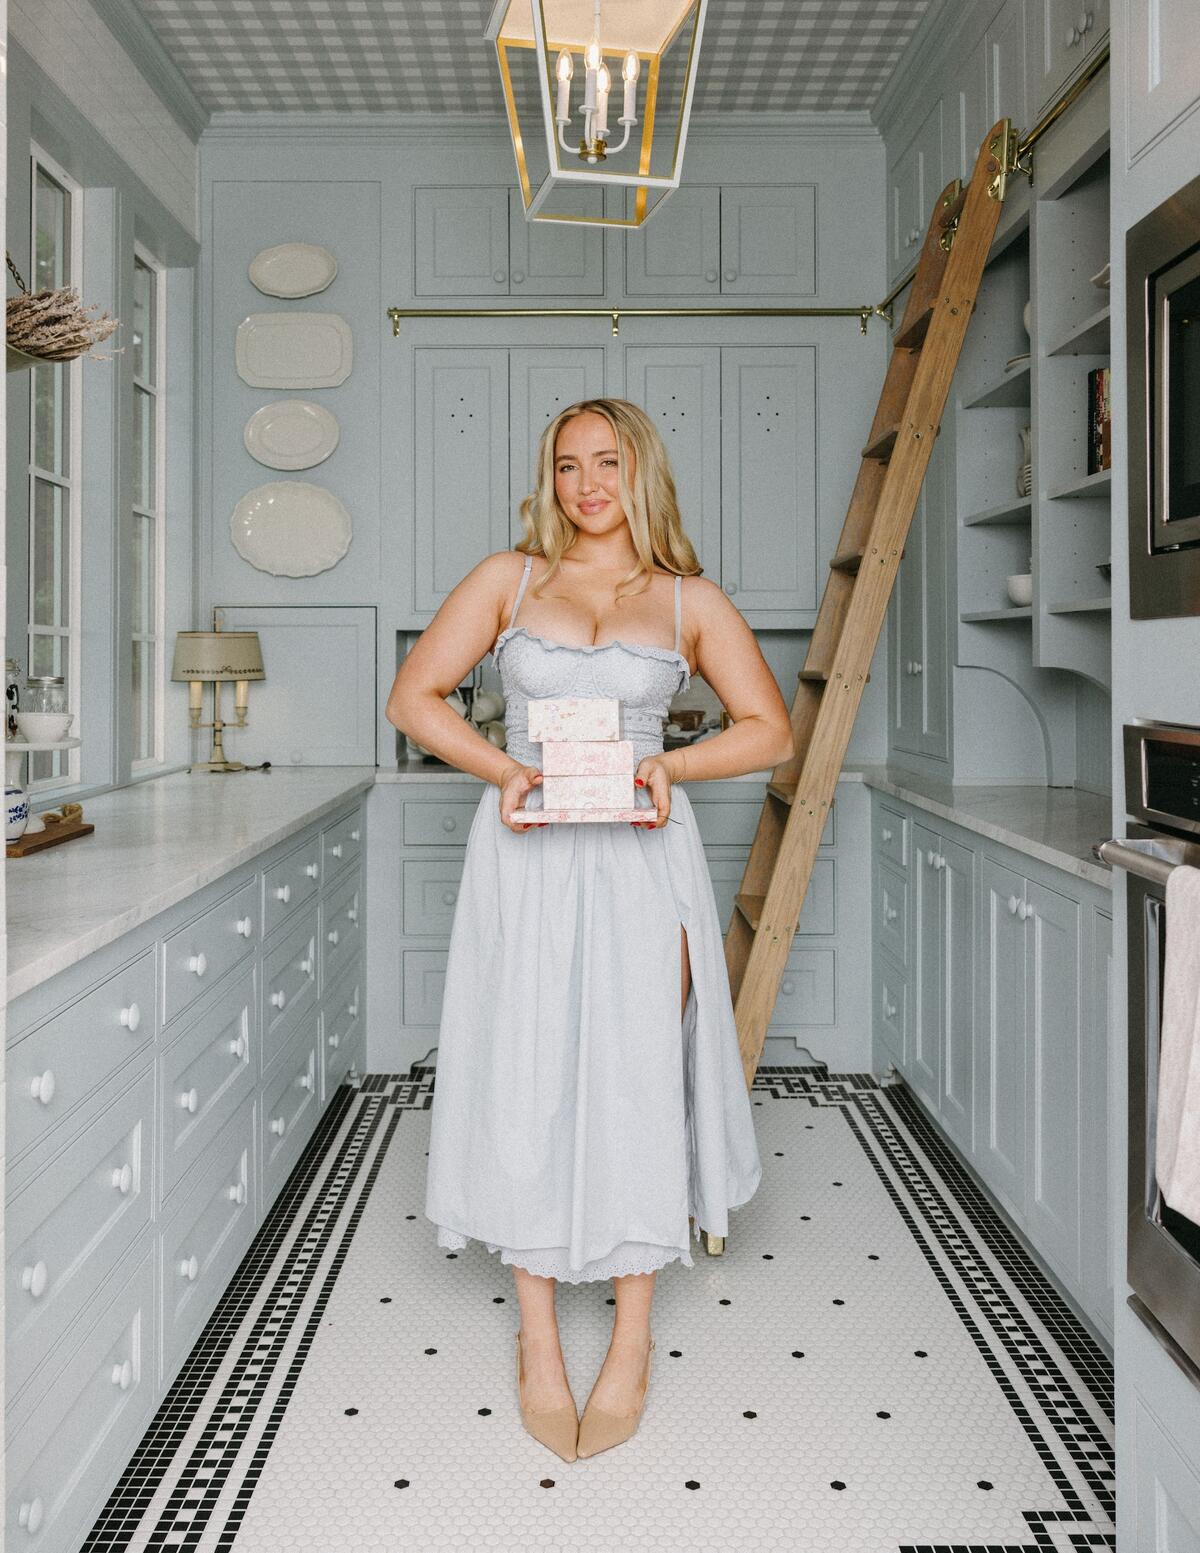 Kenzie Elizabeth, who calls herself a Gen Z Martha Stewart, posing in her Texas kitchen